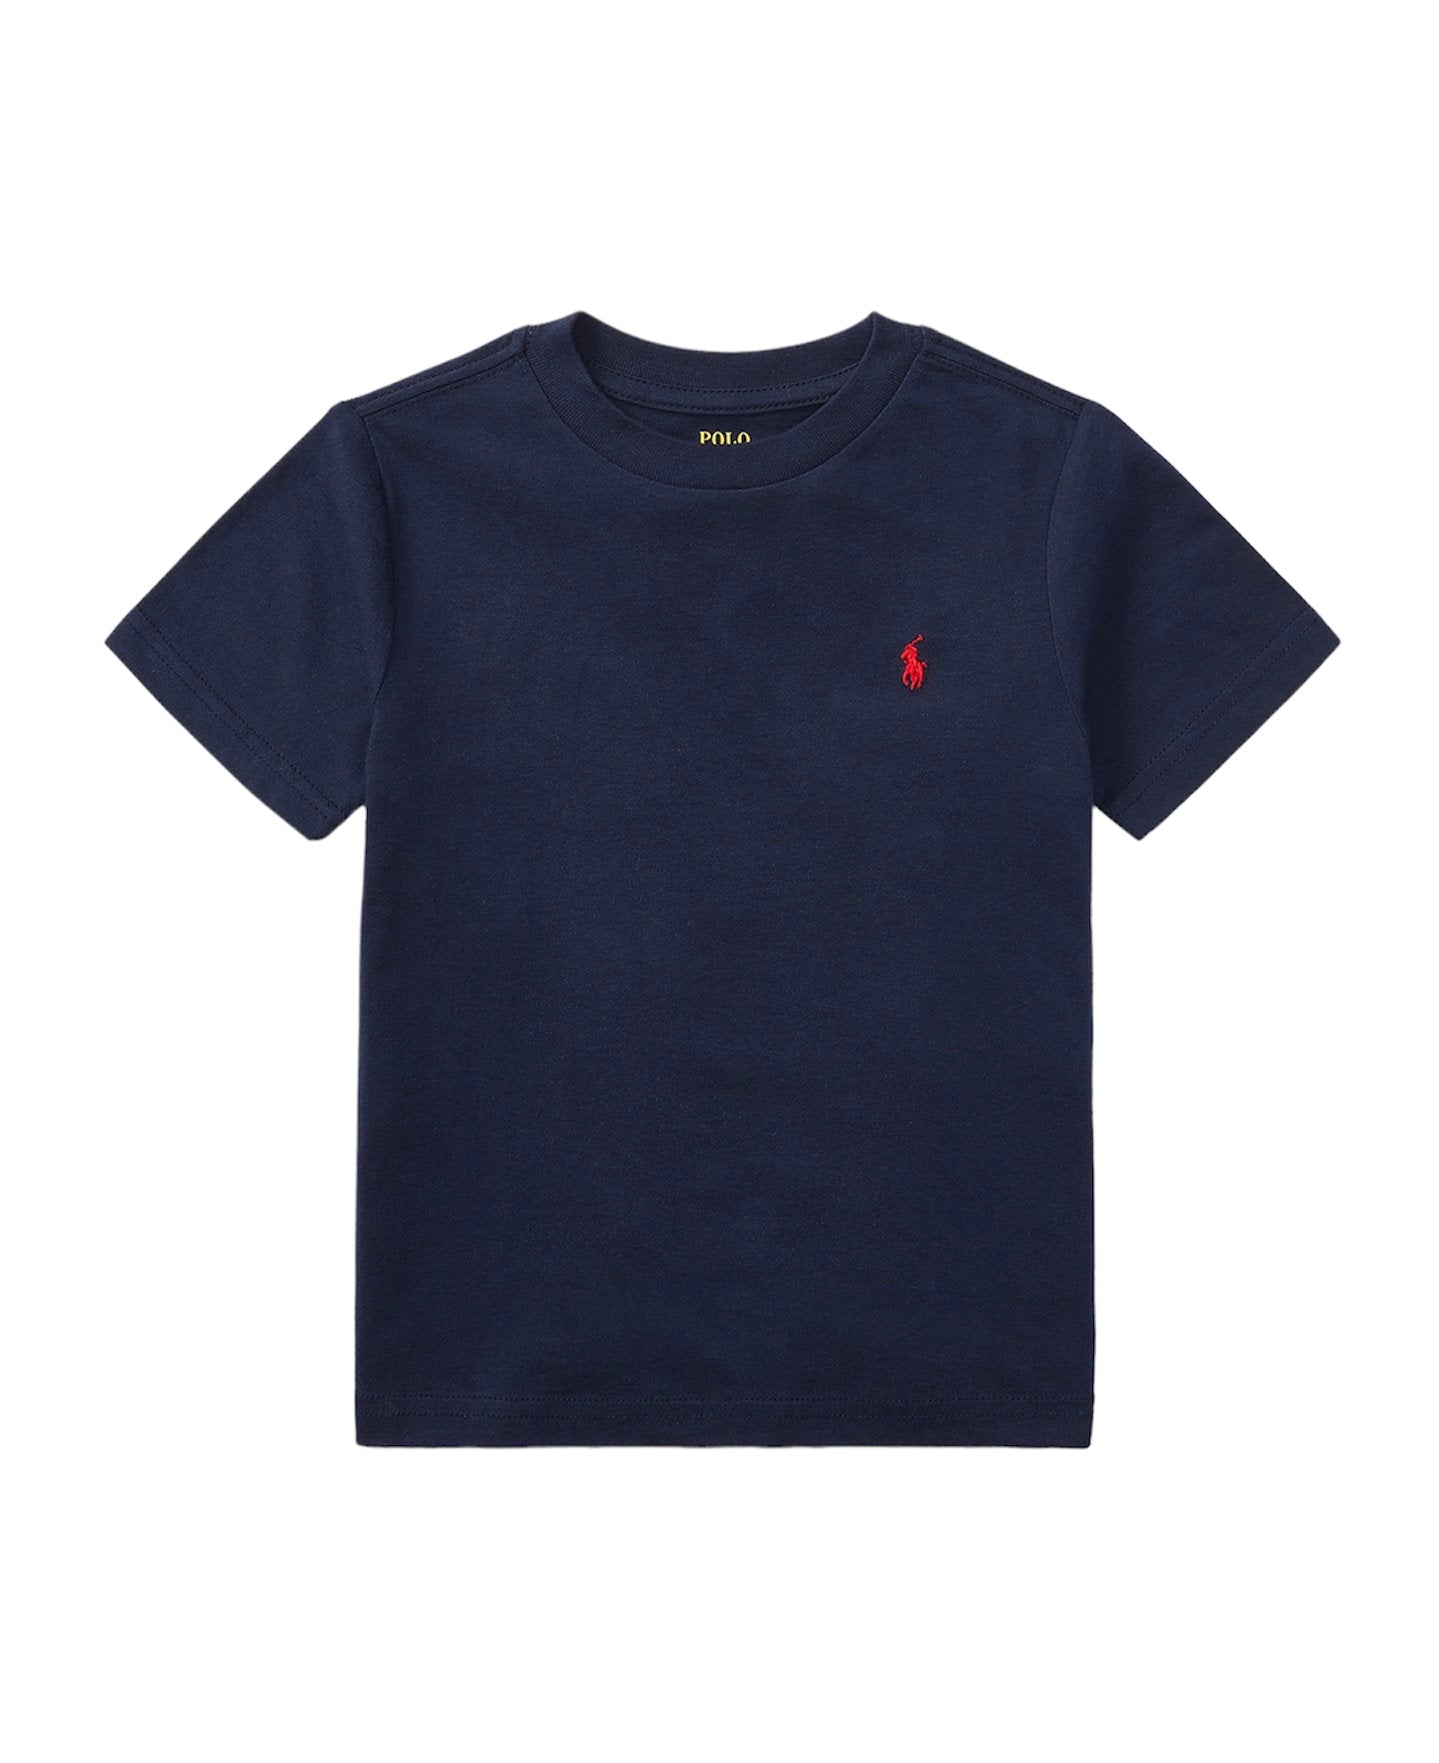 Ralph Lauren, Top, Ralph Lauren - T-shirt, Navy